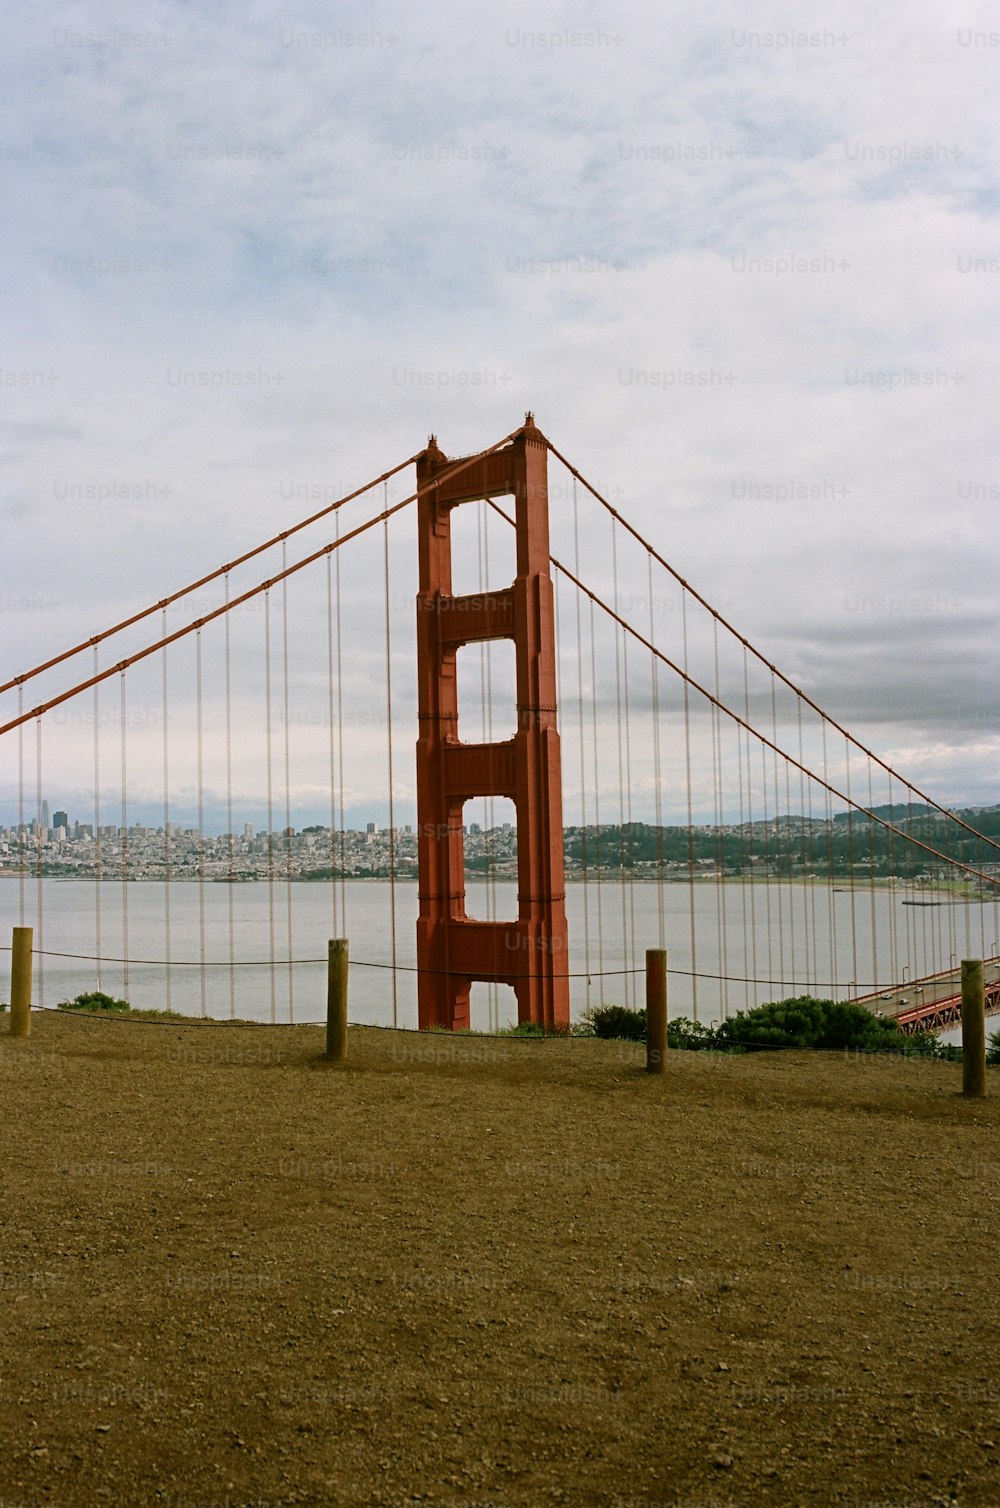 Una vista del puente Golden Gate desde el otro lado de la bahía